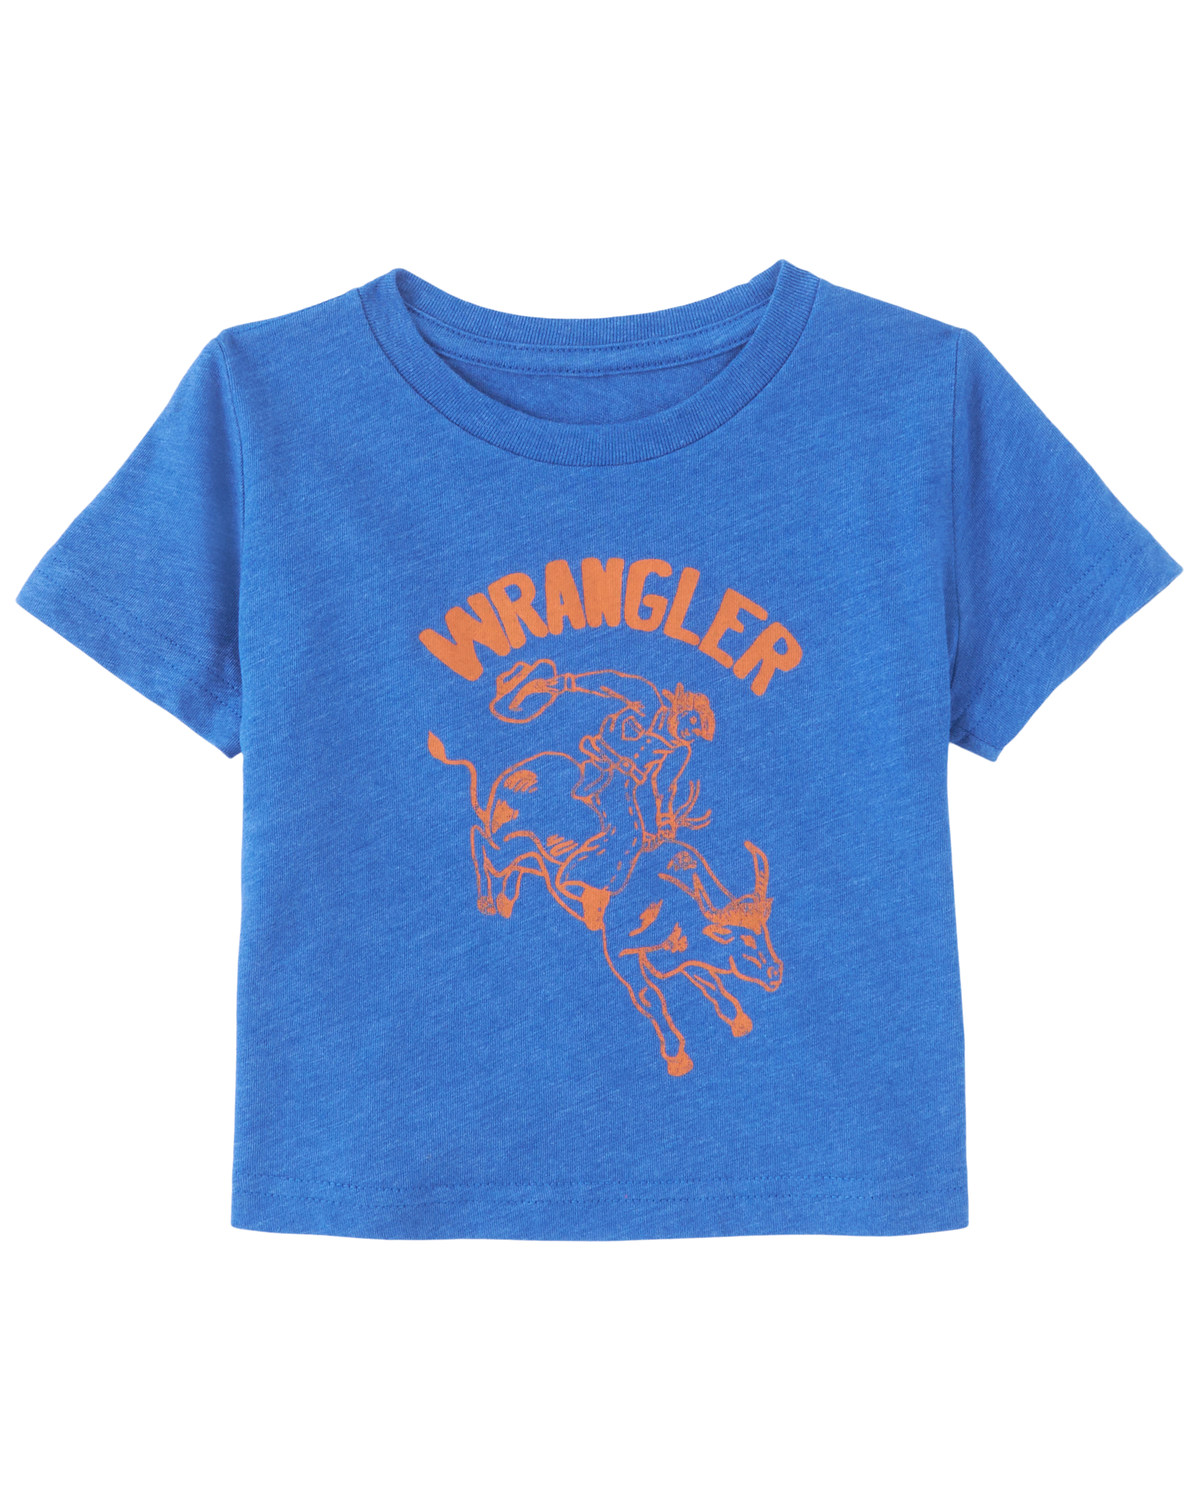 Wrangler Infant Boys' Logo Short Sleeve Graphic T-Shirt